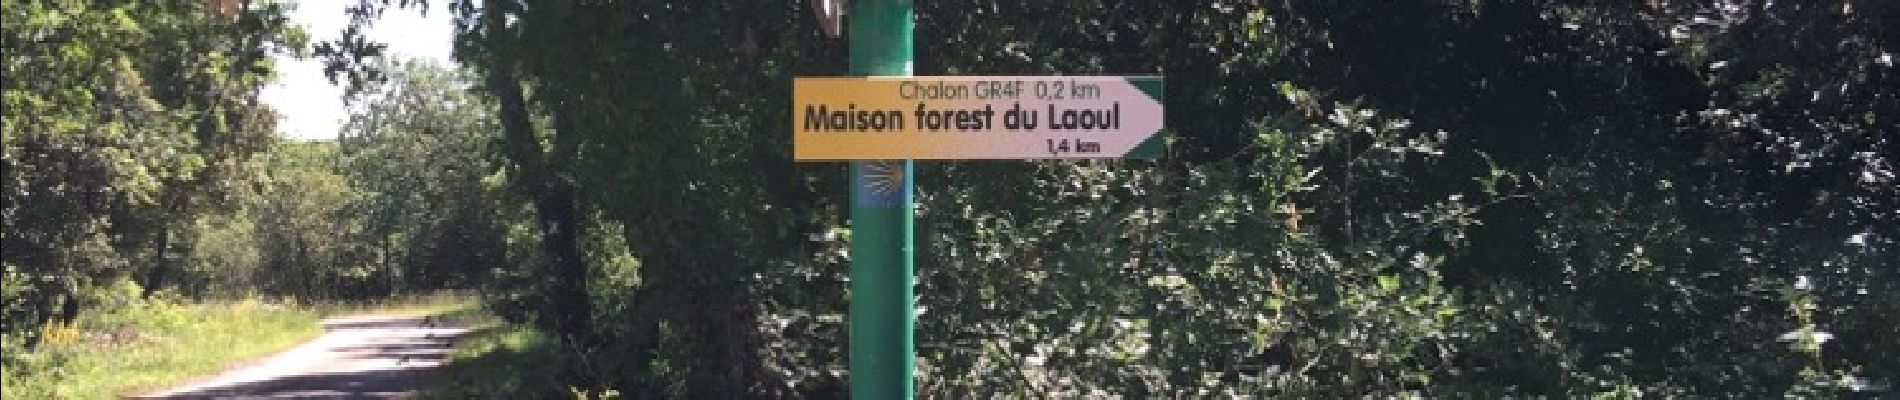 Trail Walking Bourg-Saint-Andéol - boucle chapelle de challon, bourg saint Andeol  - Photo